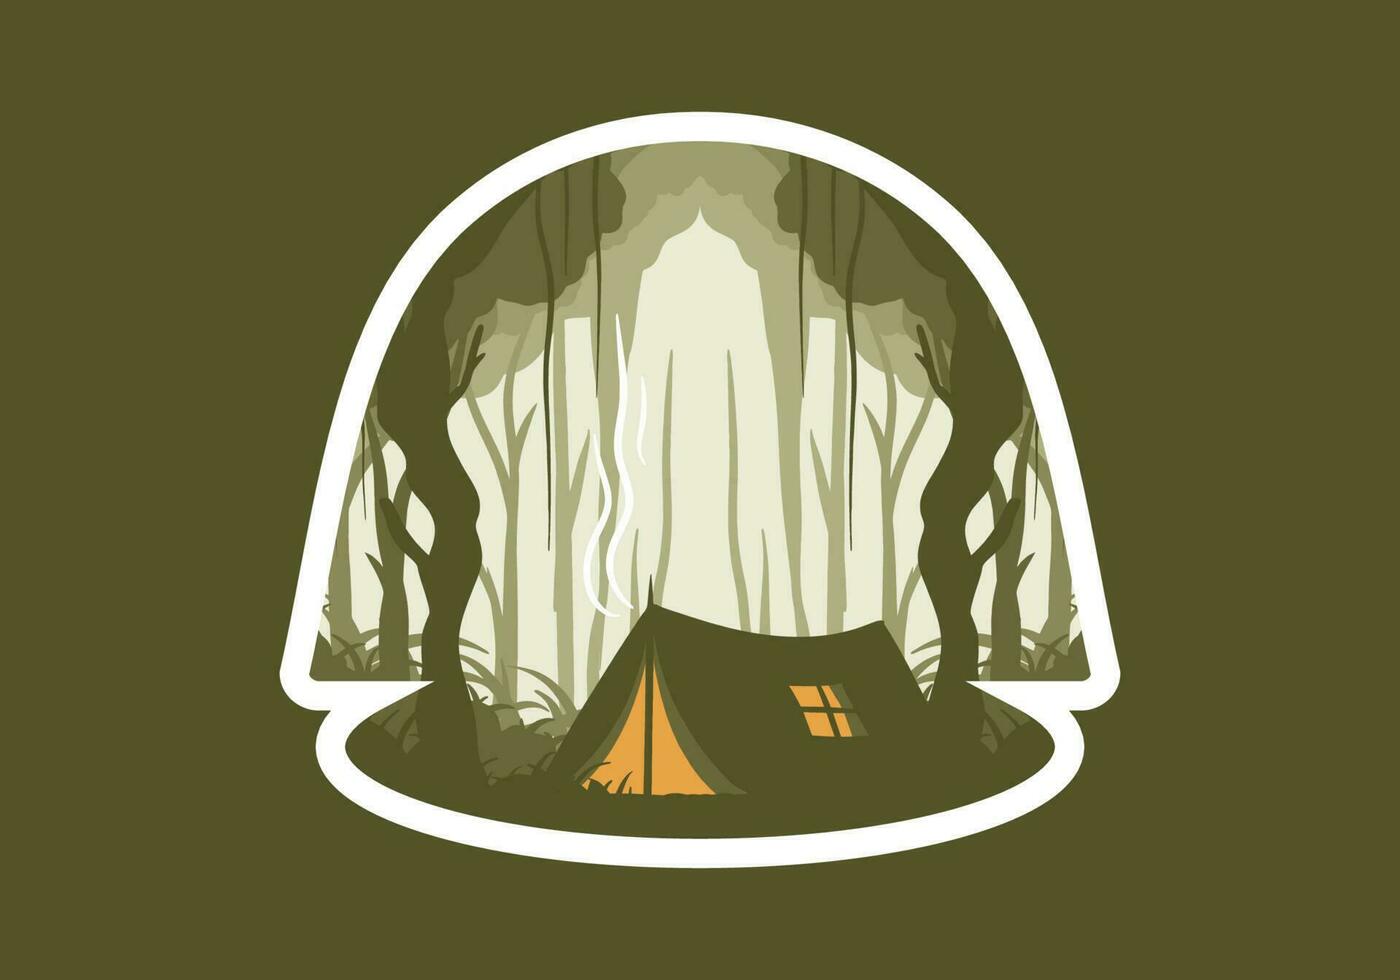 colorato piatto illustrazione di campeggio nel il giungla vettore